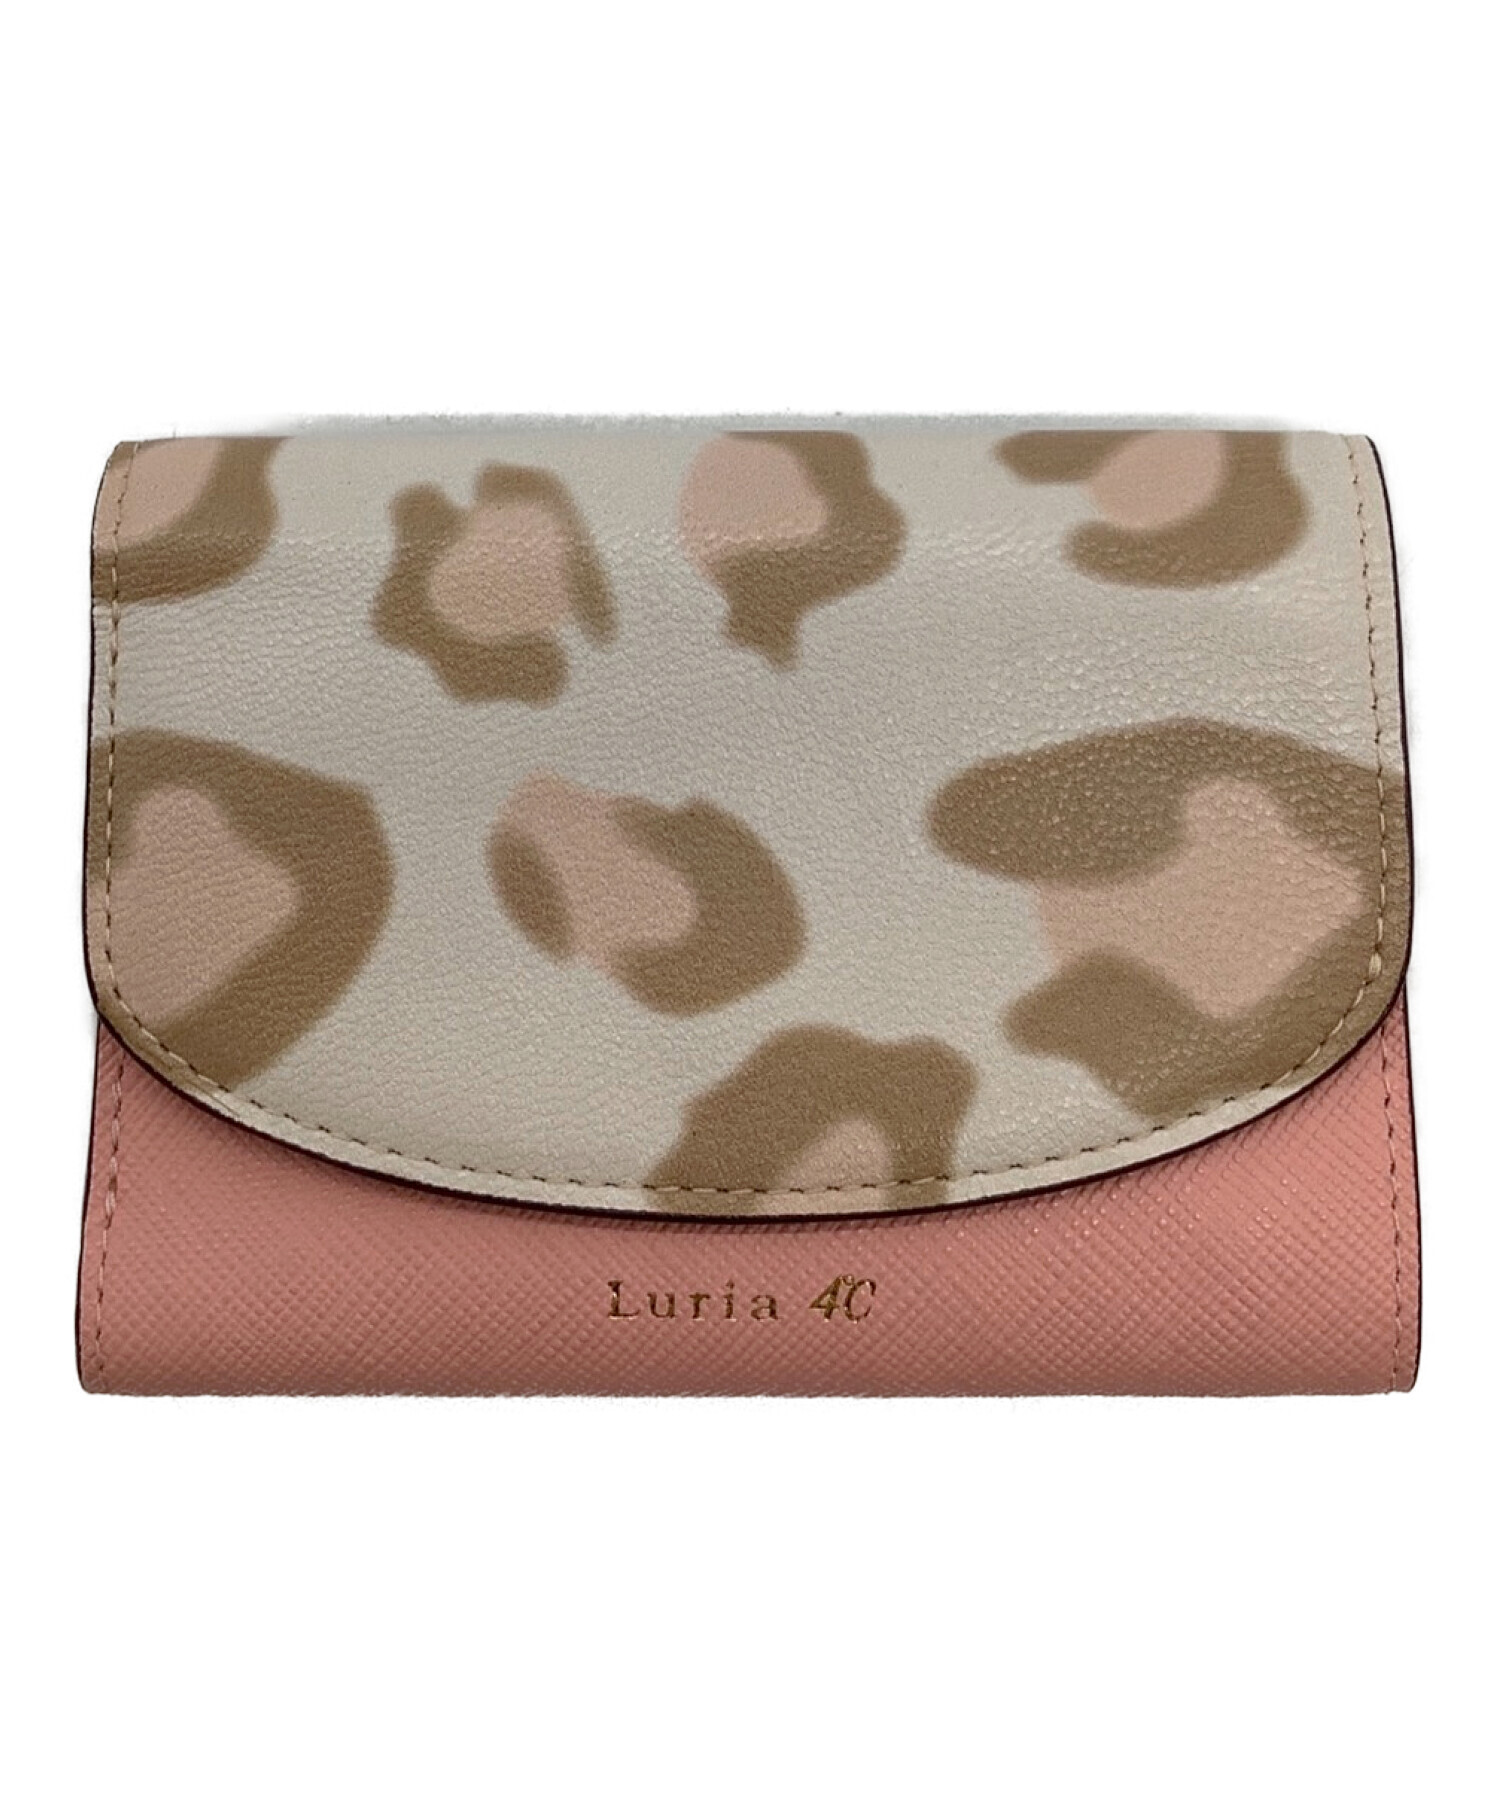 Luria 4℃ (ルリアヨンドシー) 3つ折り財布 ピンク